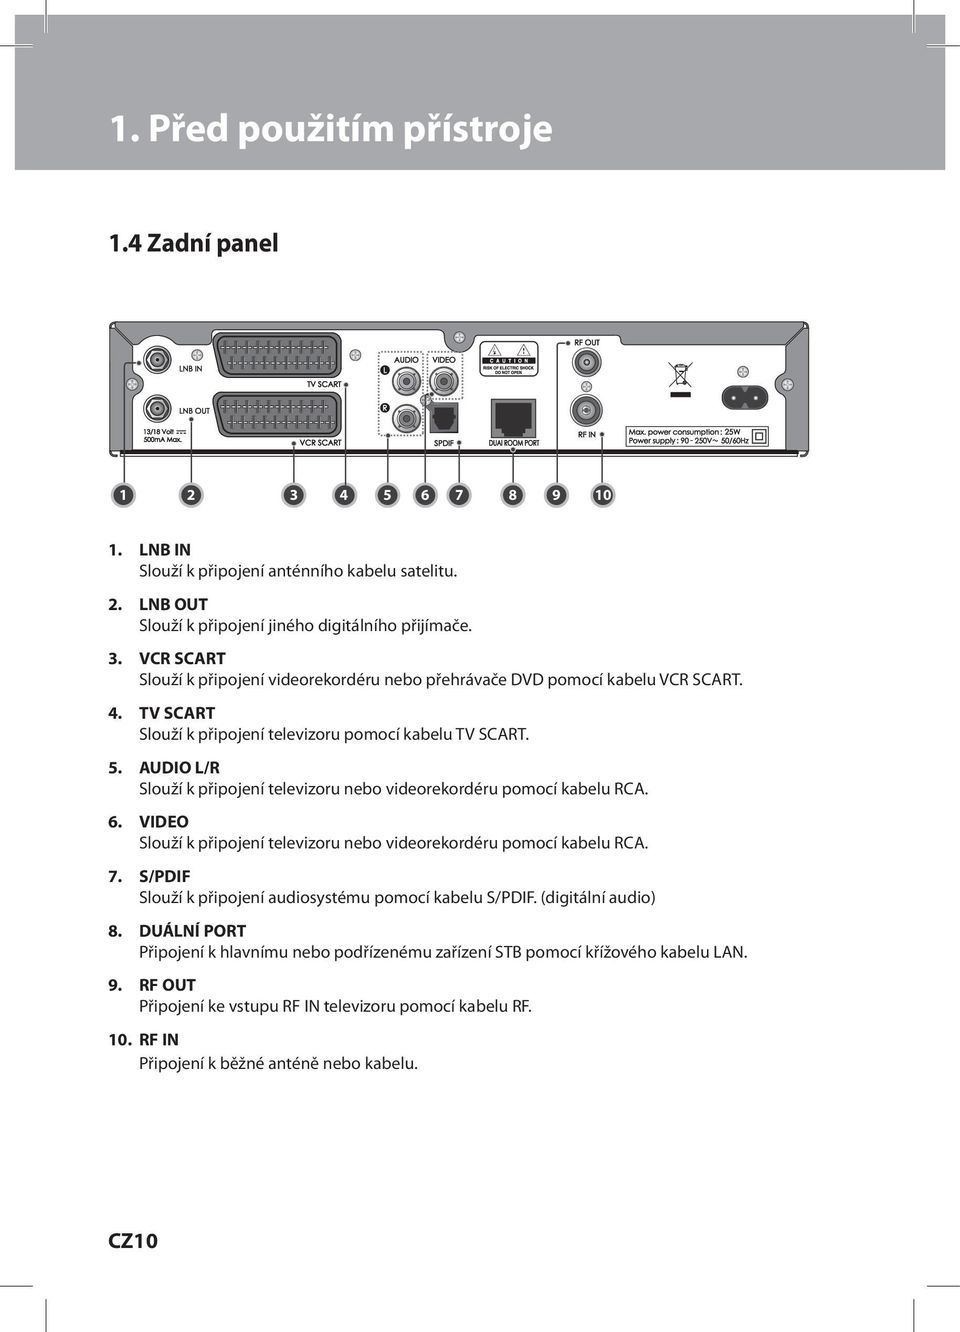 AUDIO L/R Slouží k připojení televizoru nebo videorekordéru pomocí kabelu RCA. 6. VIDEO Slouží k připojení televizoru nebo videorekordéru pomocí kabelu RCA. 7.